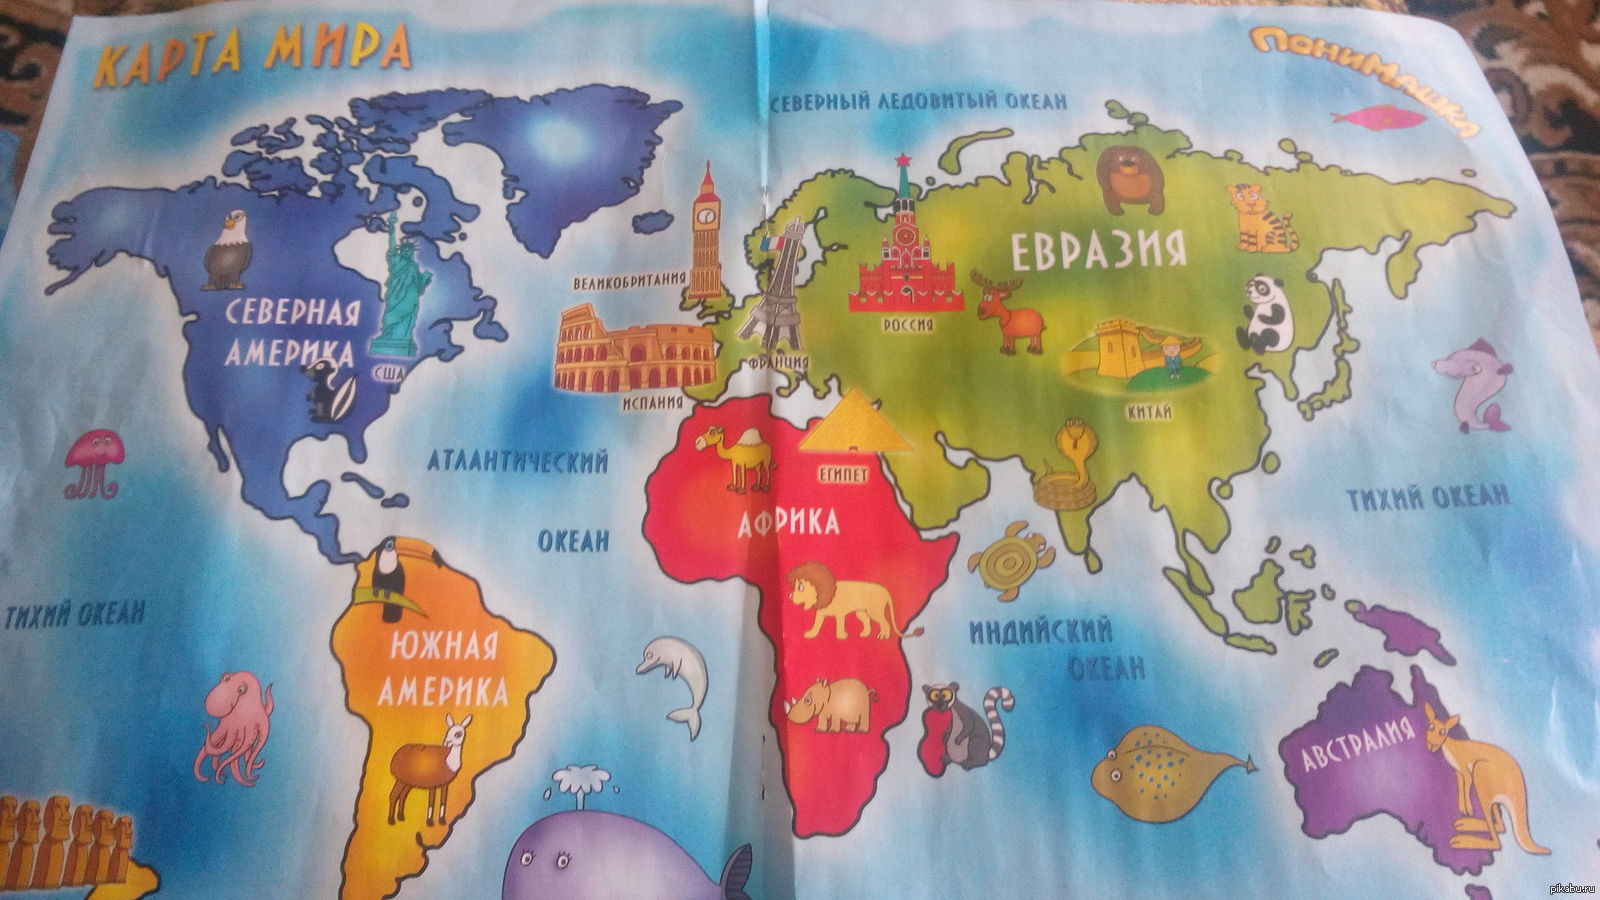 Картинка материков с названиями. Континенты для дошкольников. Материки для детей. Карта материков для детей.